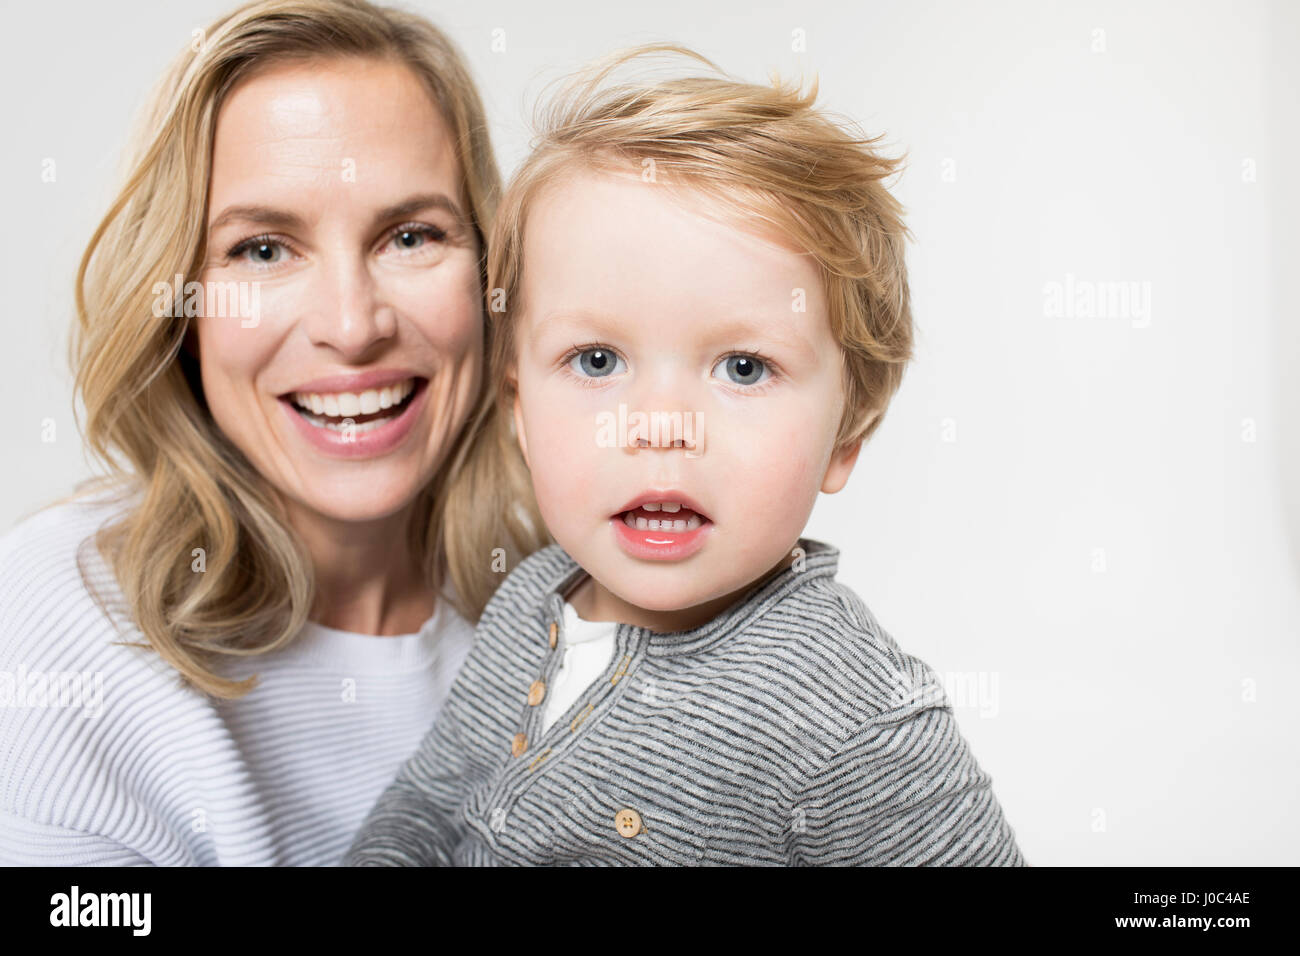 Portrait de mère et fils against white background, smiling Banque D'Images